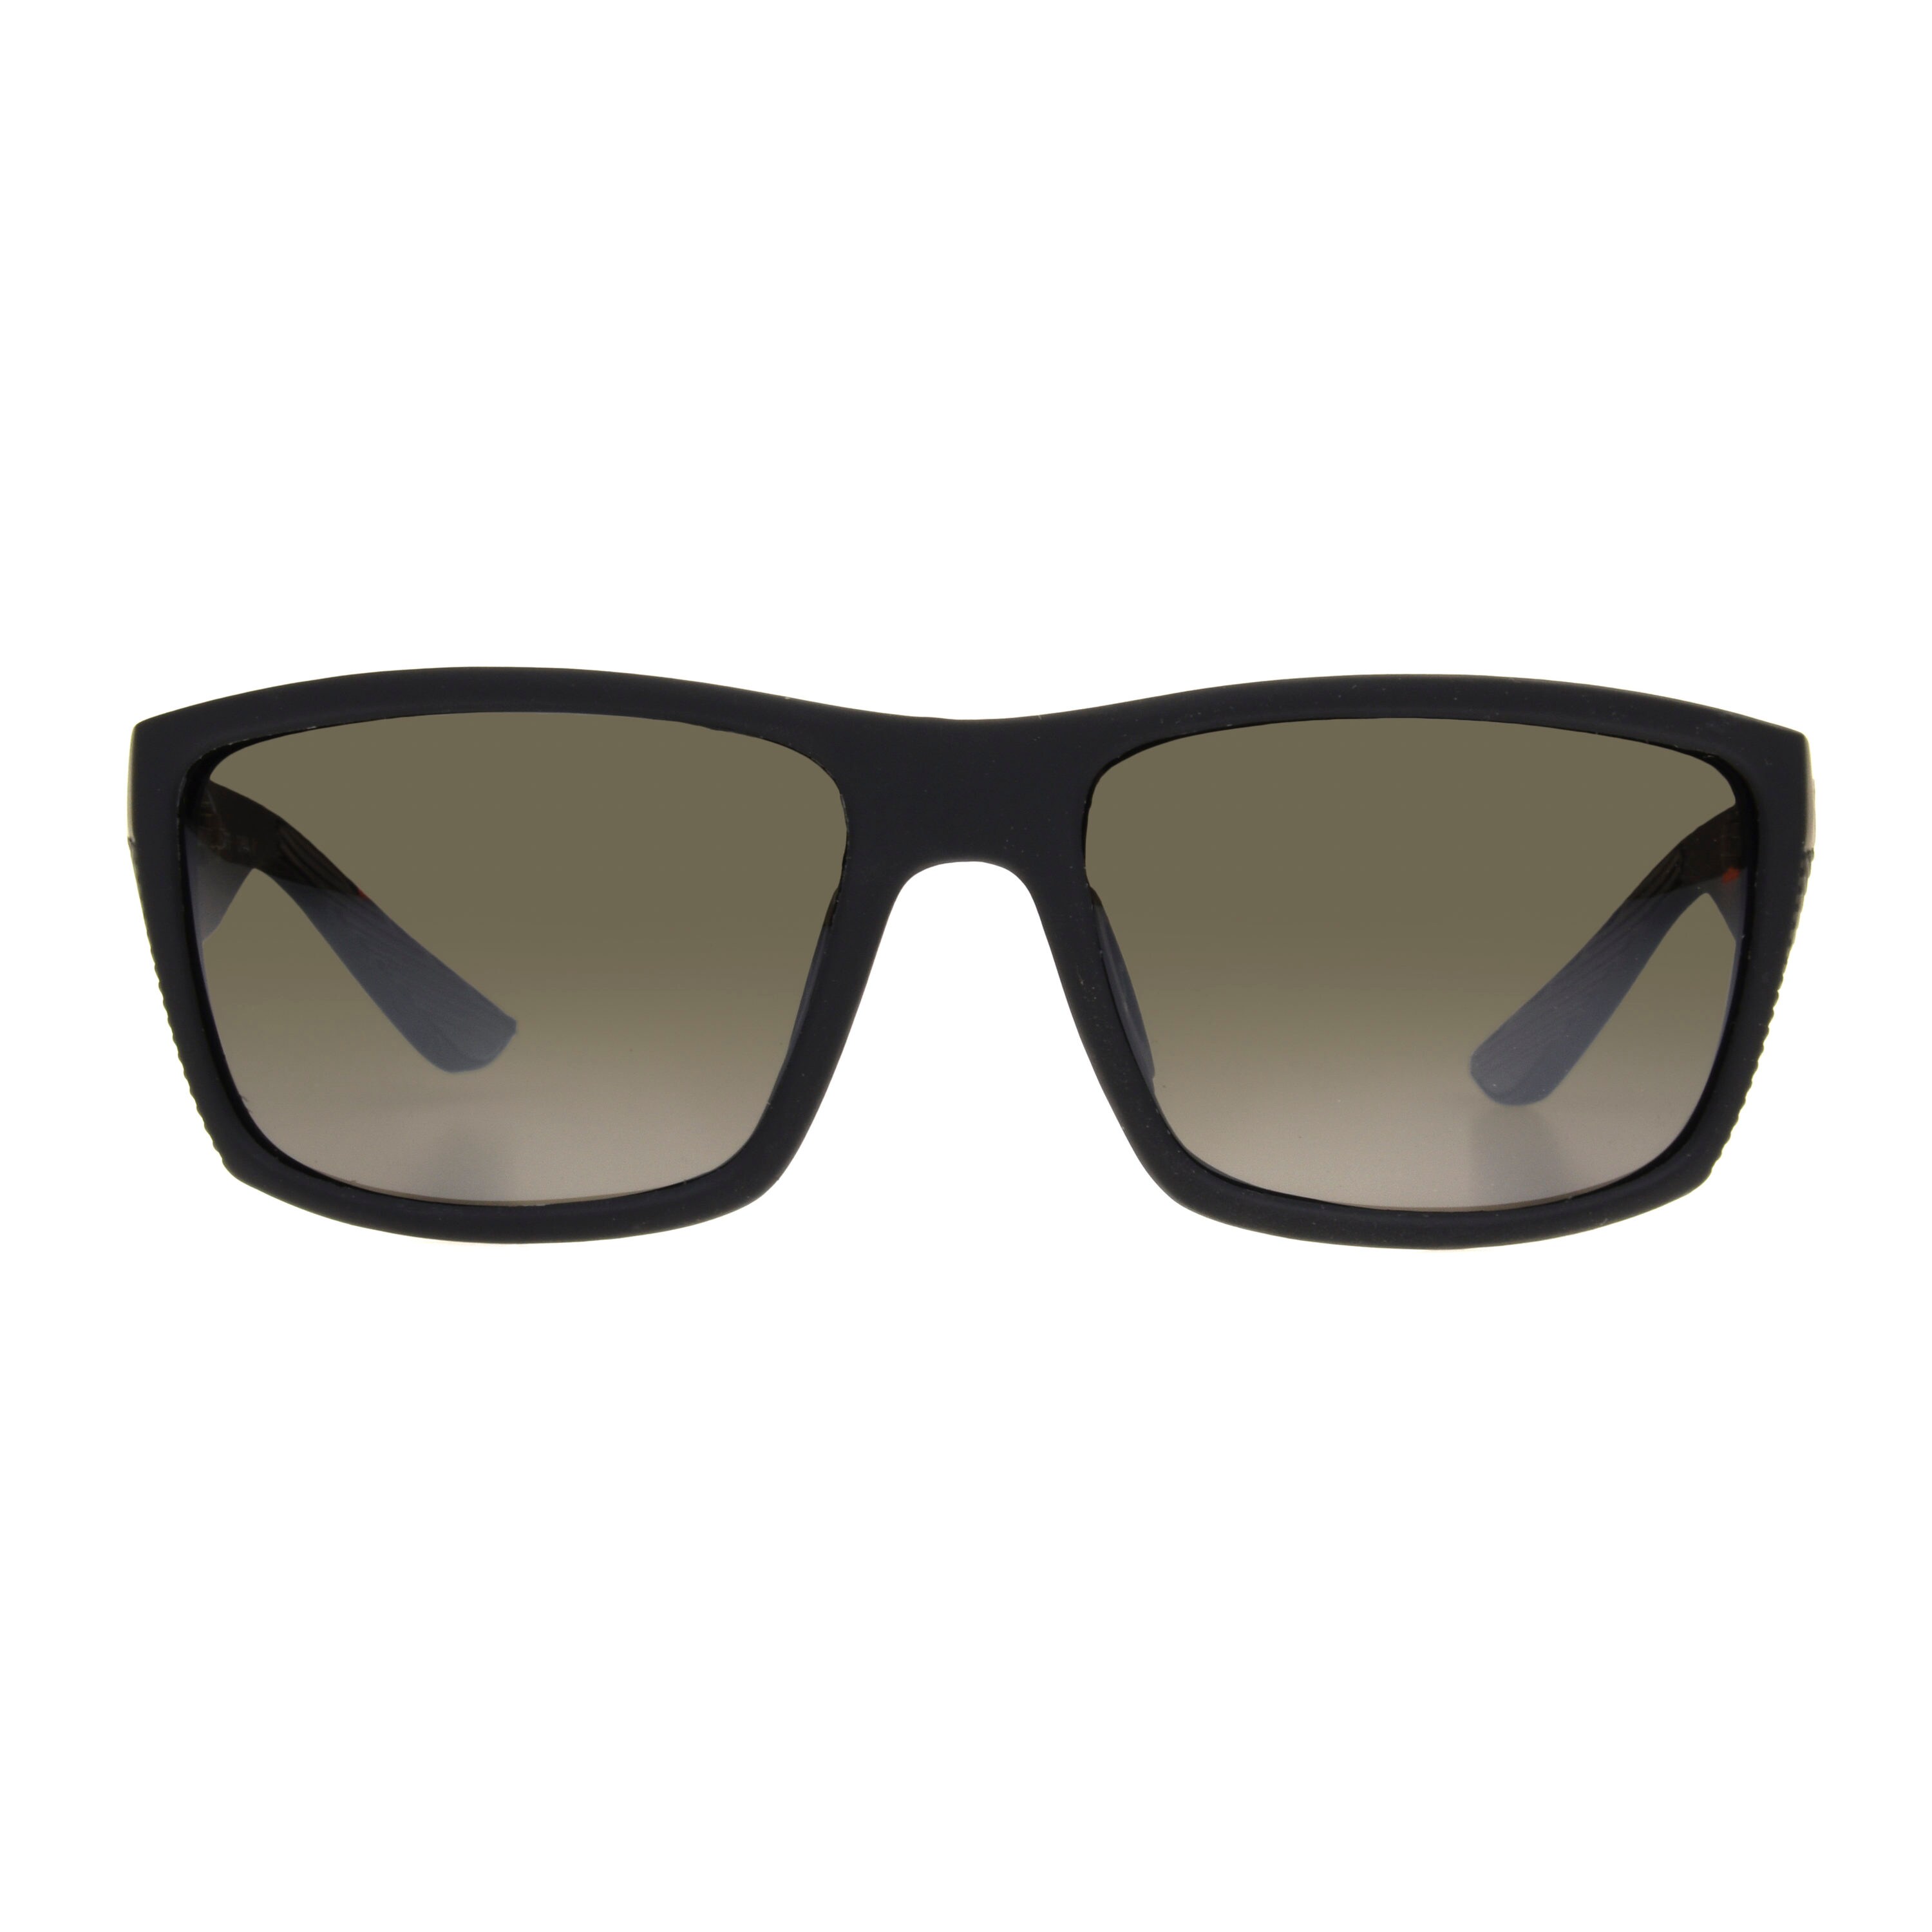 Foster Grant All Terrain 9 Mens Polarized Black Rubberized Plastic  Sunglasses at